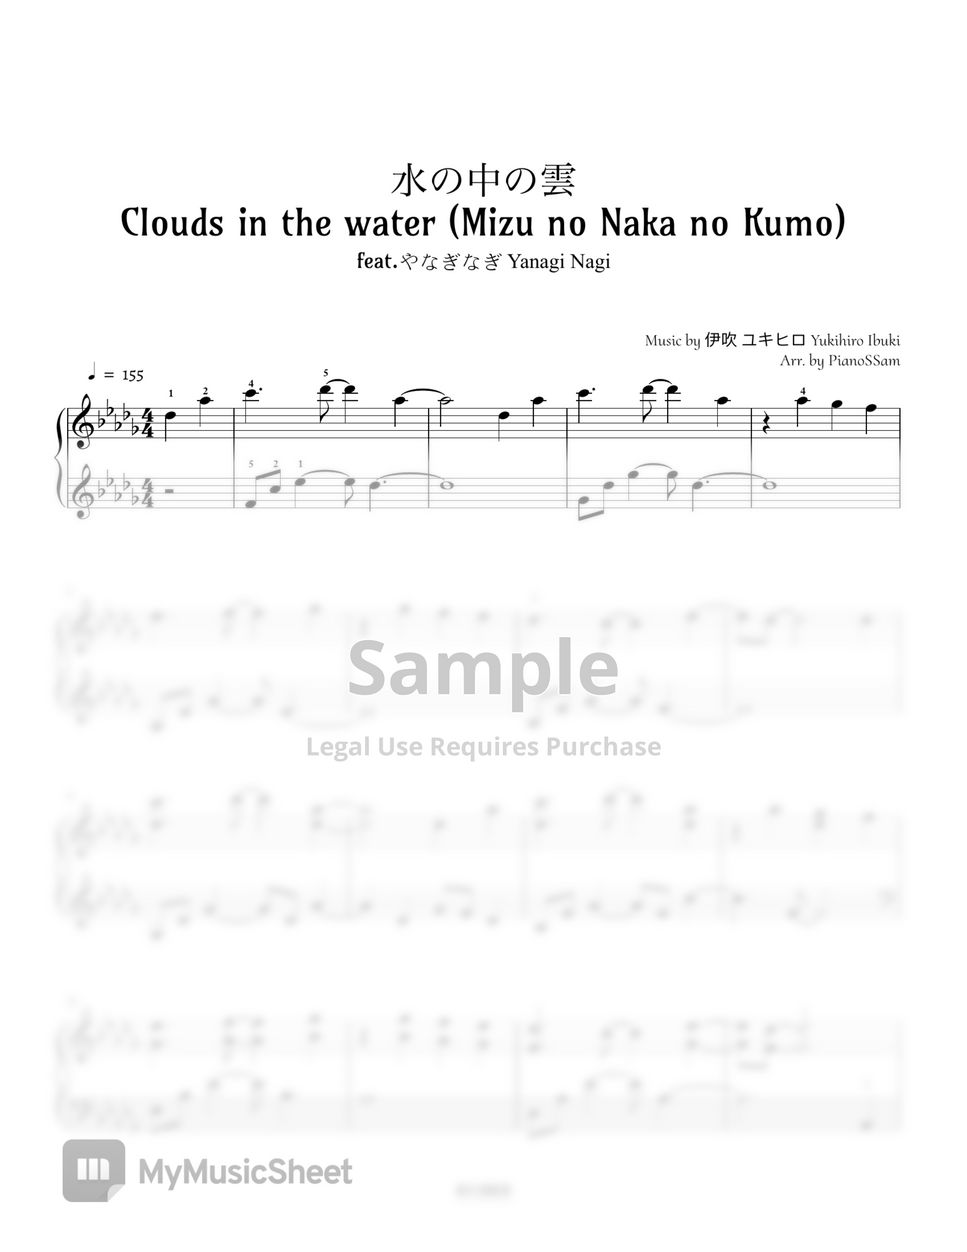 伊吹 ユキヒロ - 水の中の雲 (feat. やなぎなぎ Yanagi Nagi) by PianoSSam